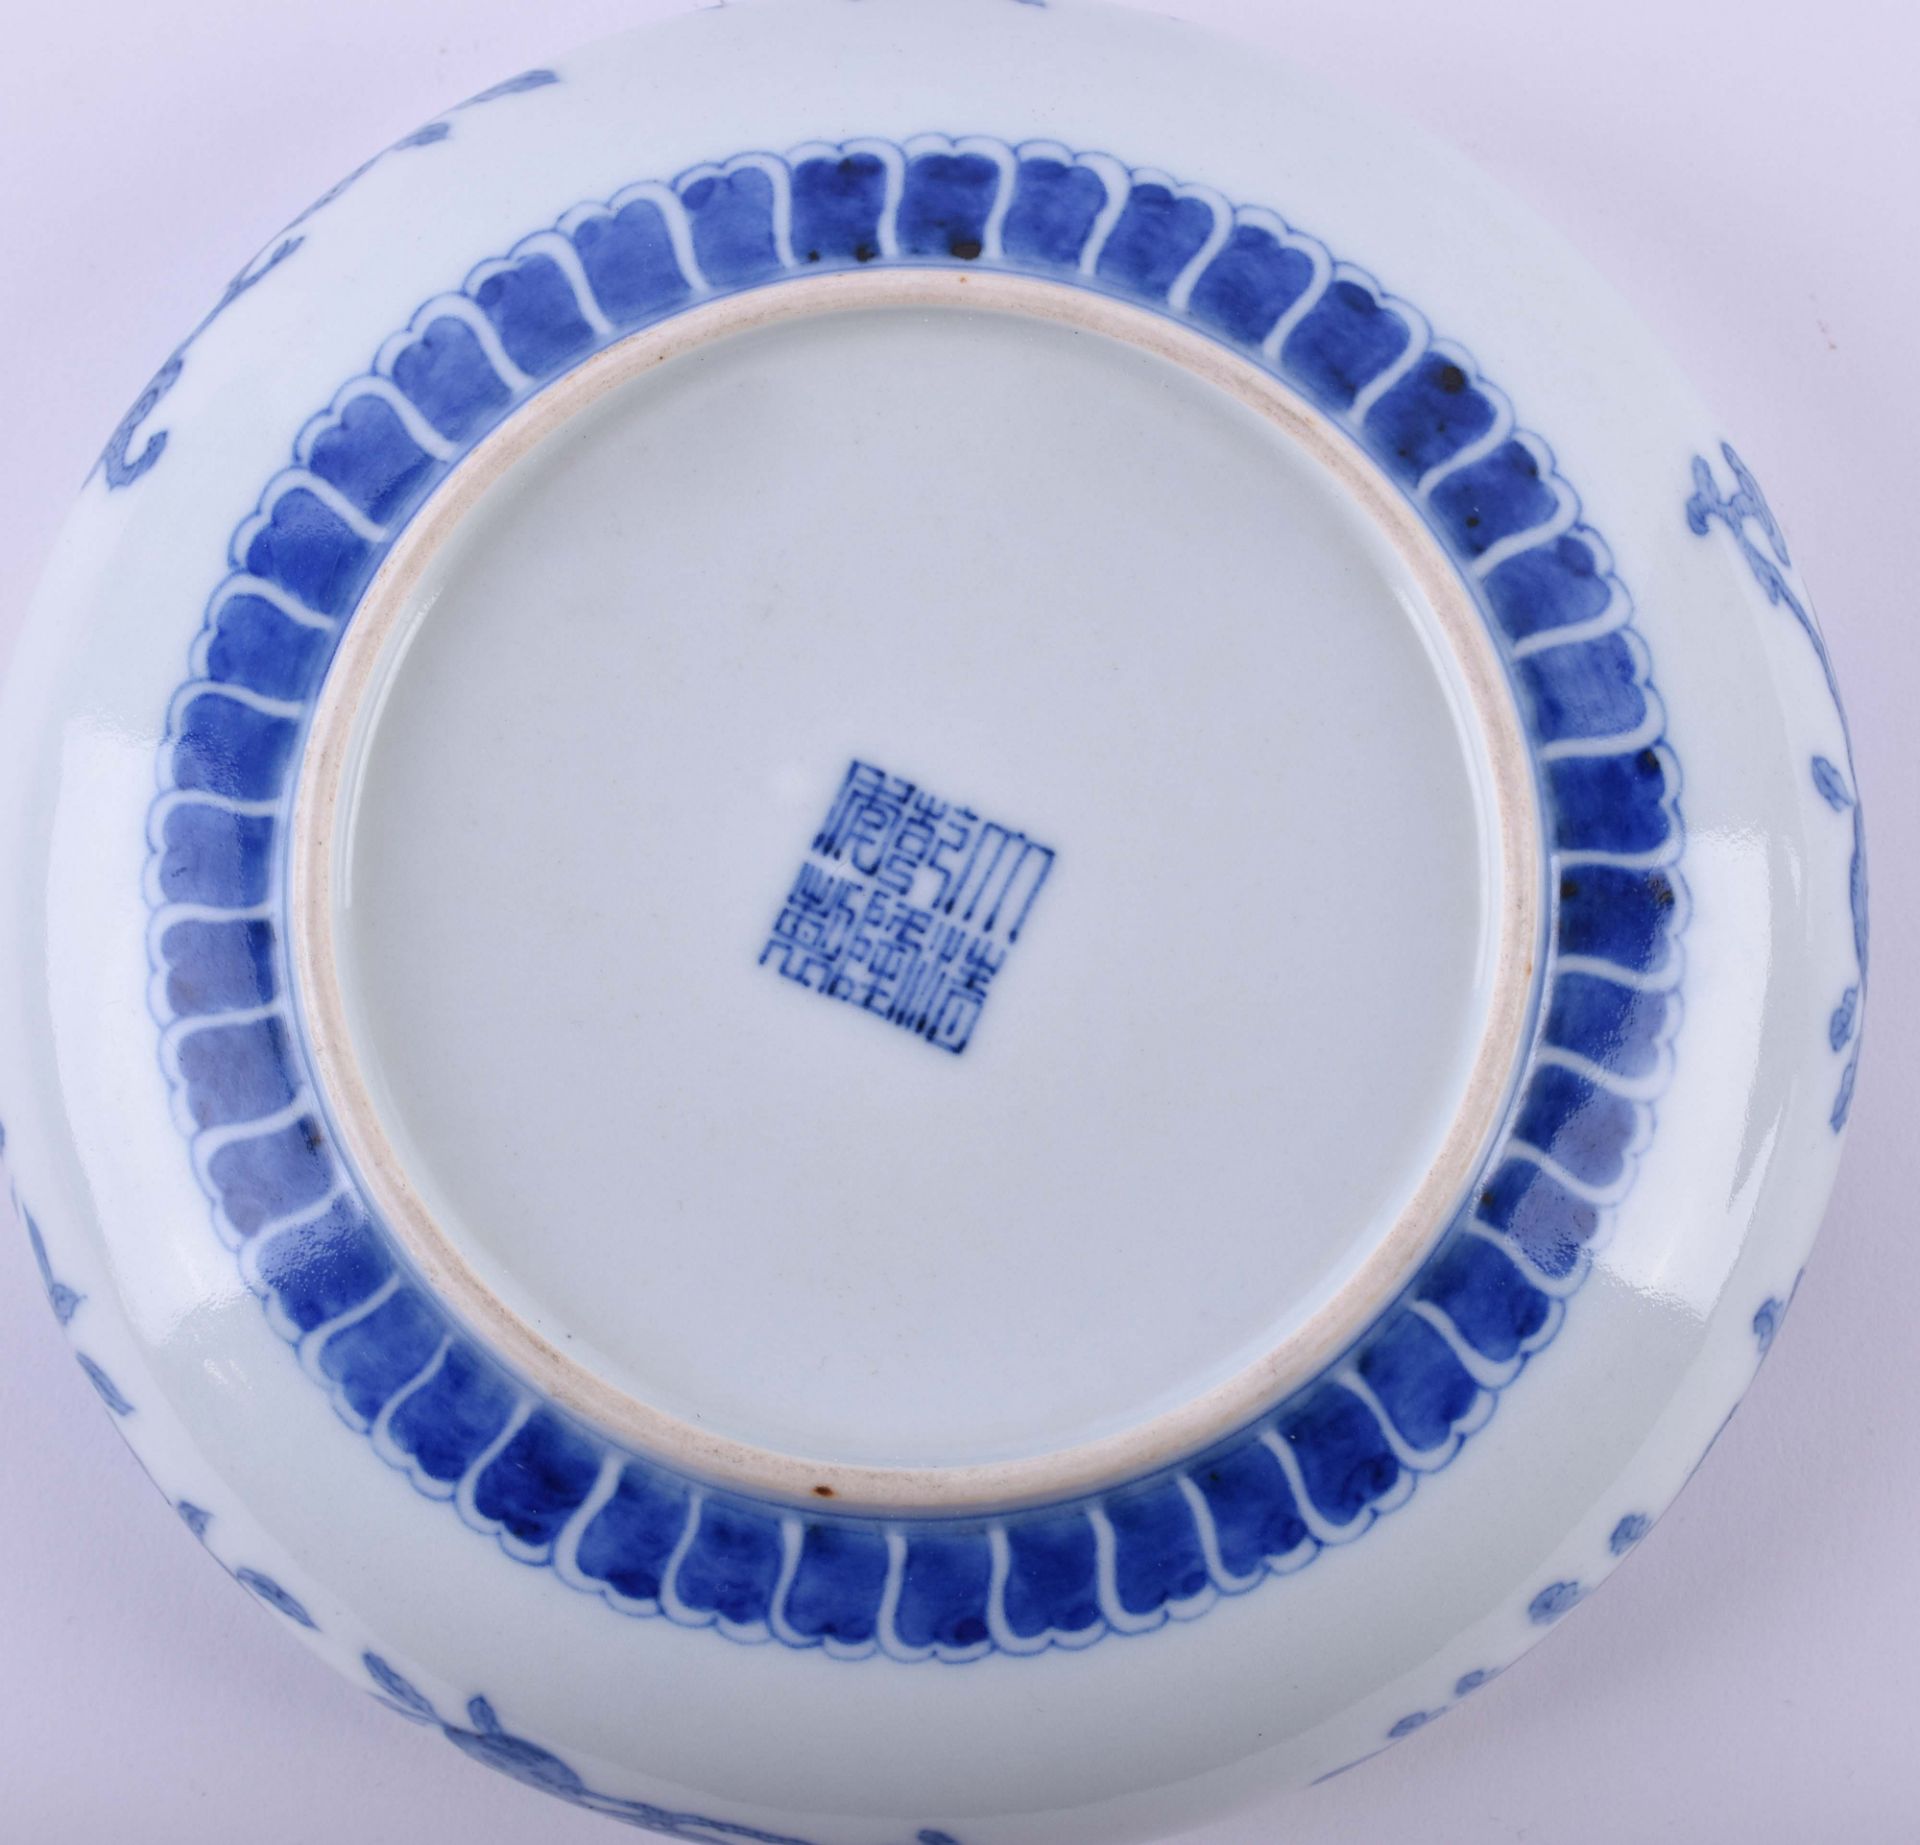  Bowl China Qing dynasty - Image 10 of 10